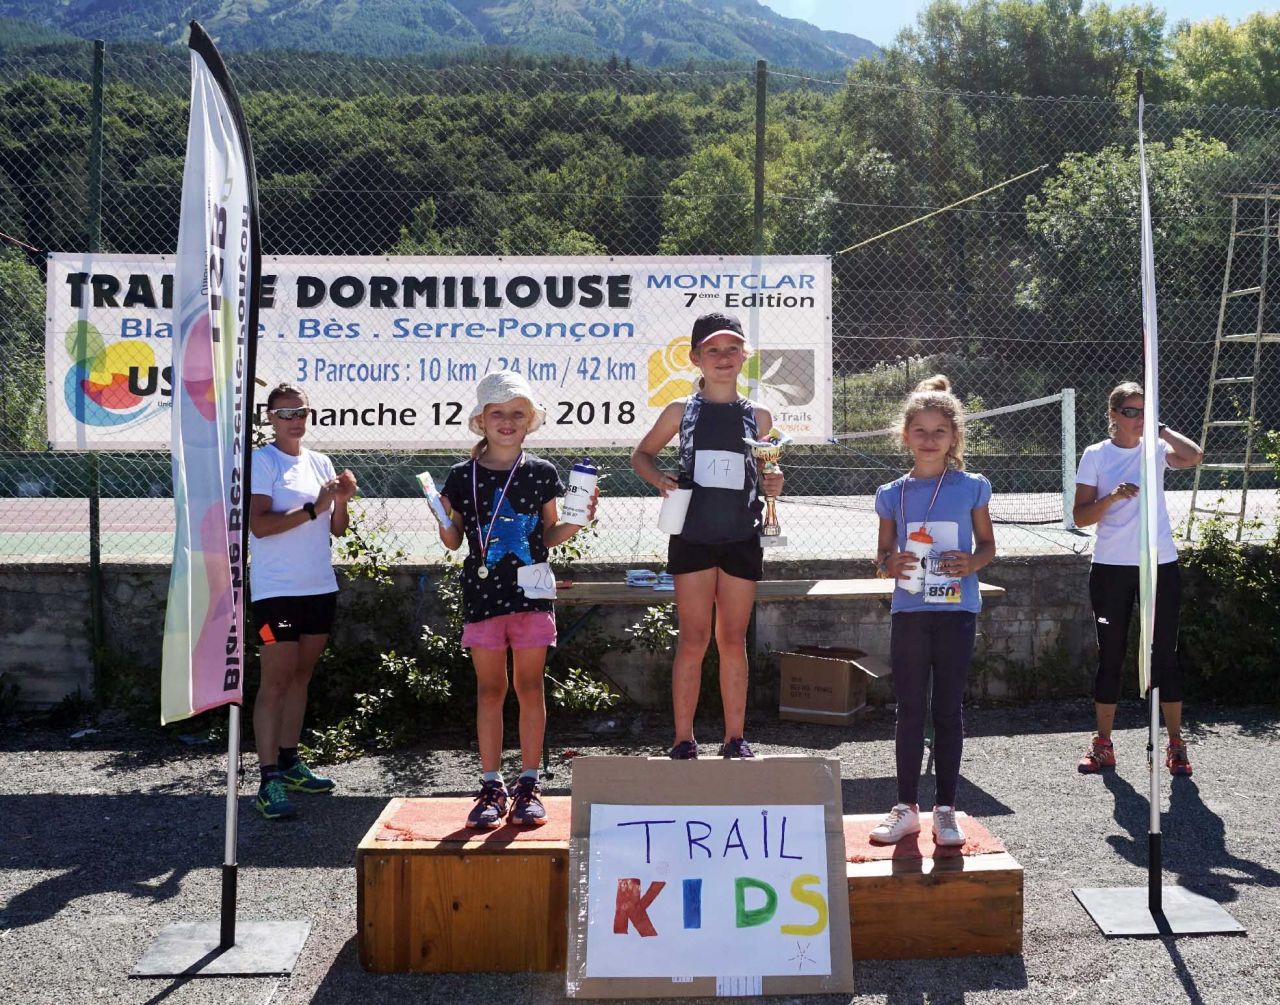 7ème_Trail_de_Dormillouse_12_août_2018_podium_trail_kids_3.jpg